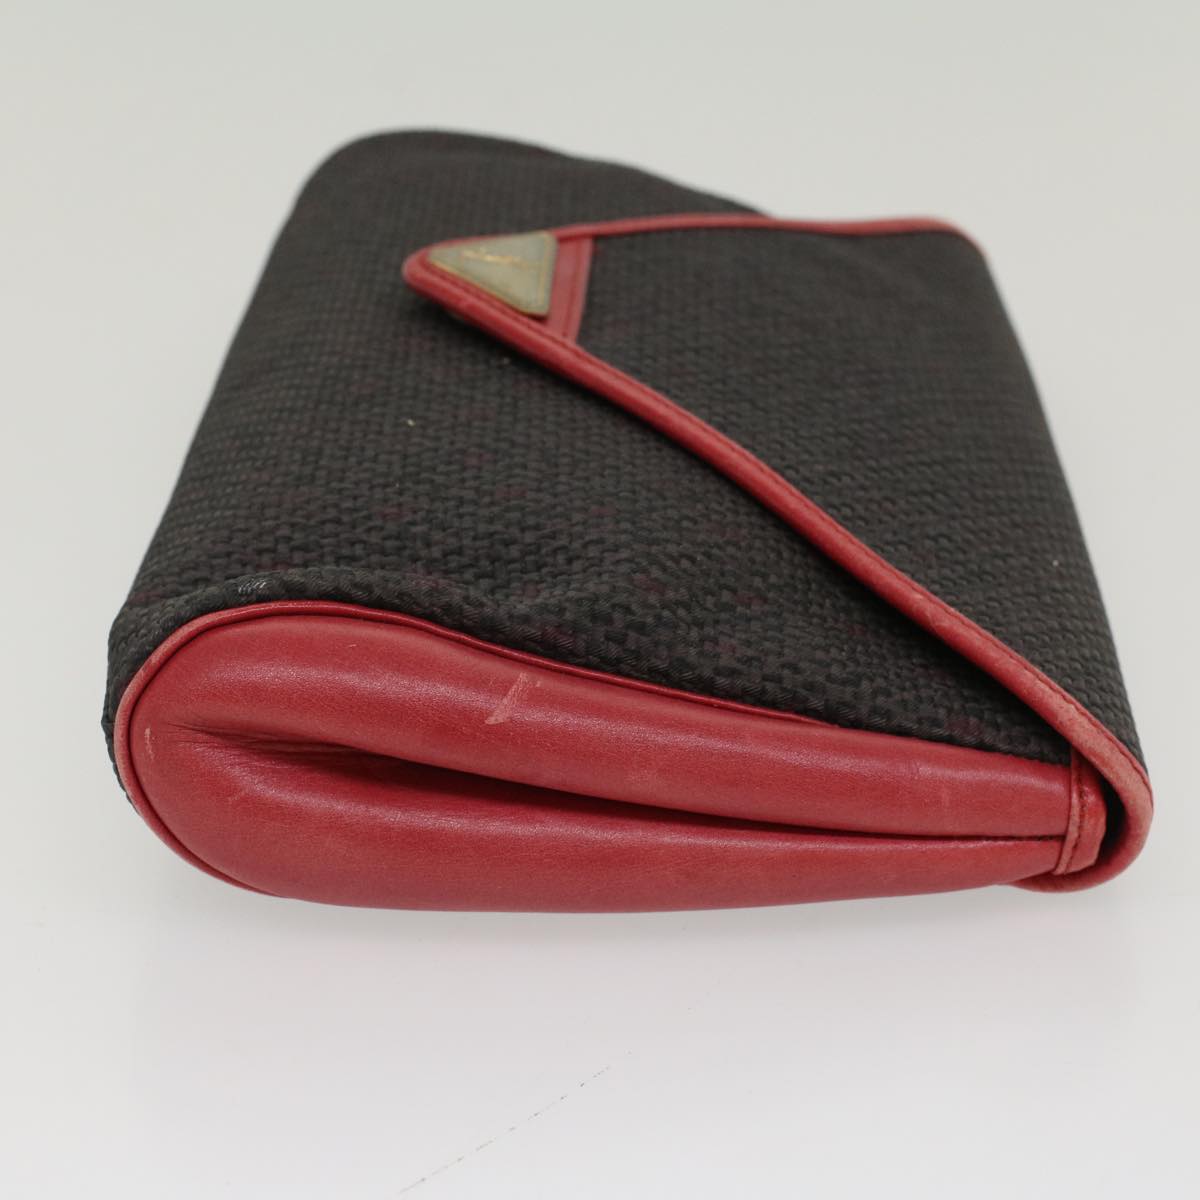 SAINT LAURENT Clutch Bag PVC Leather Red Auth bs7992